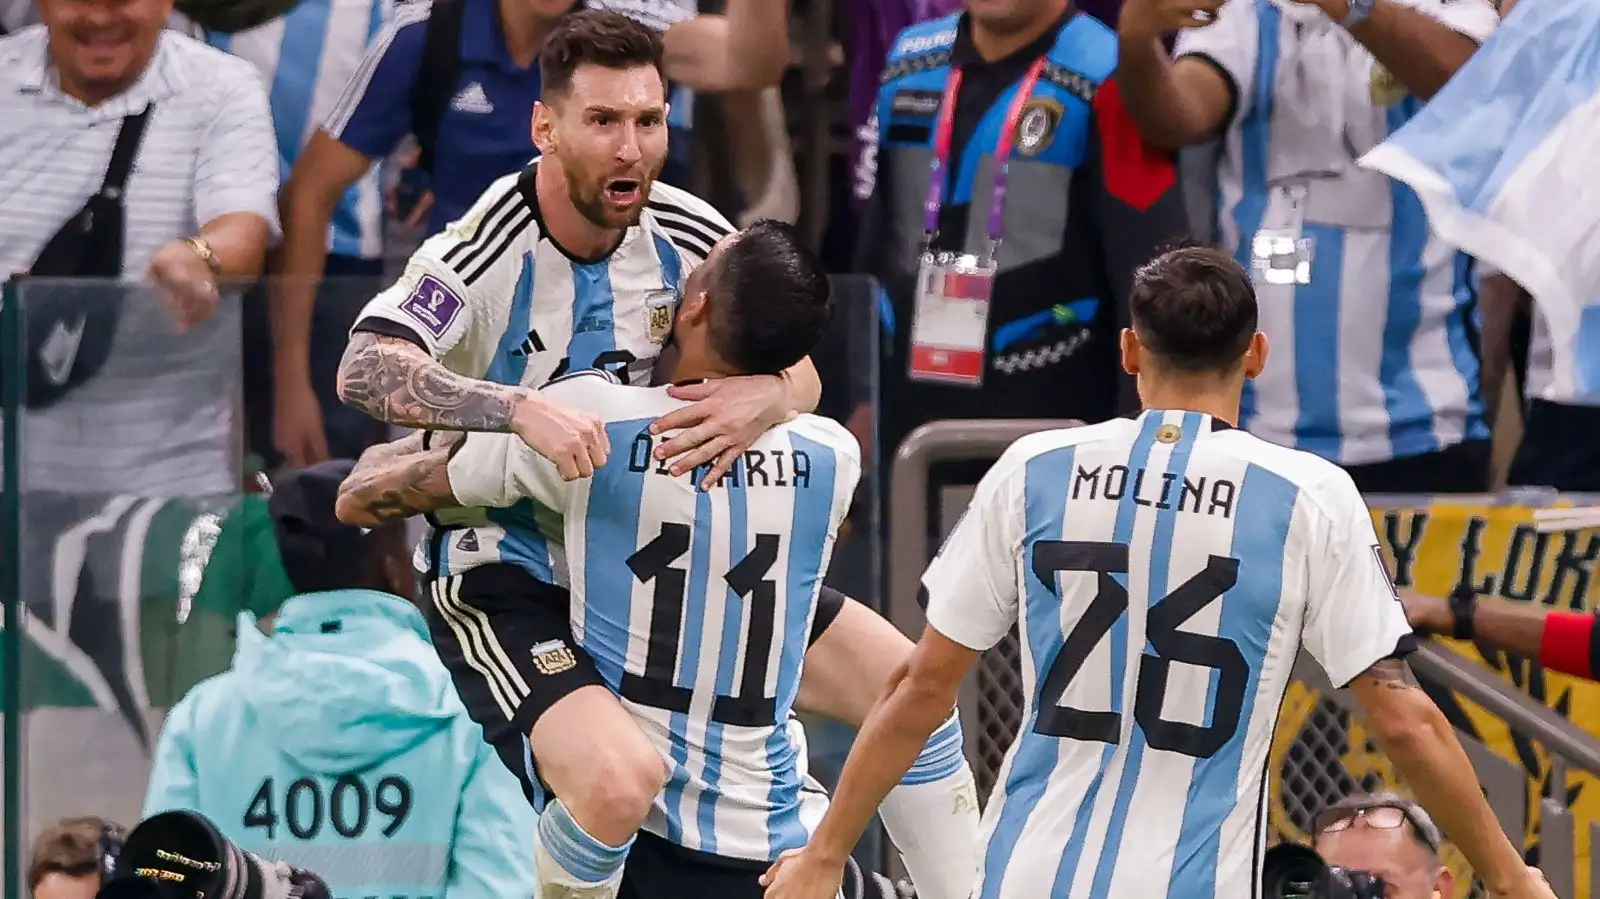 Lionel Messi celebrates scoring for Argentina against Mexico.